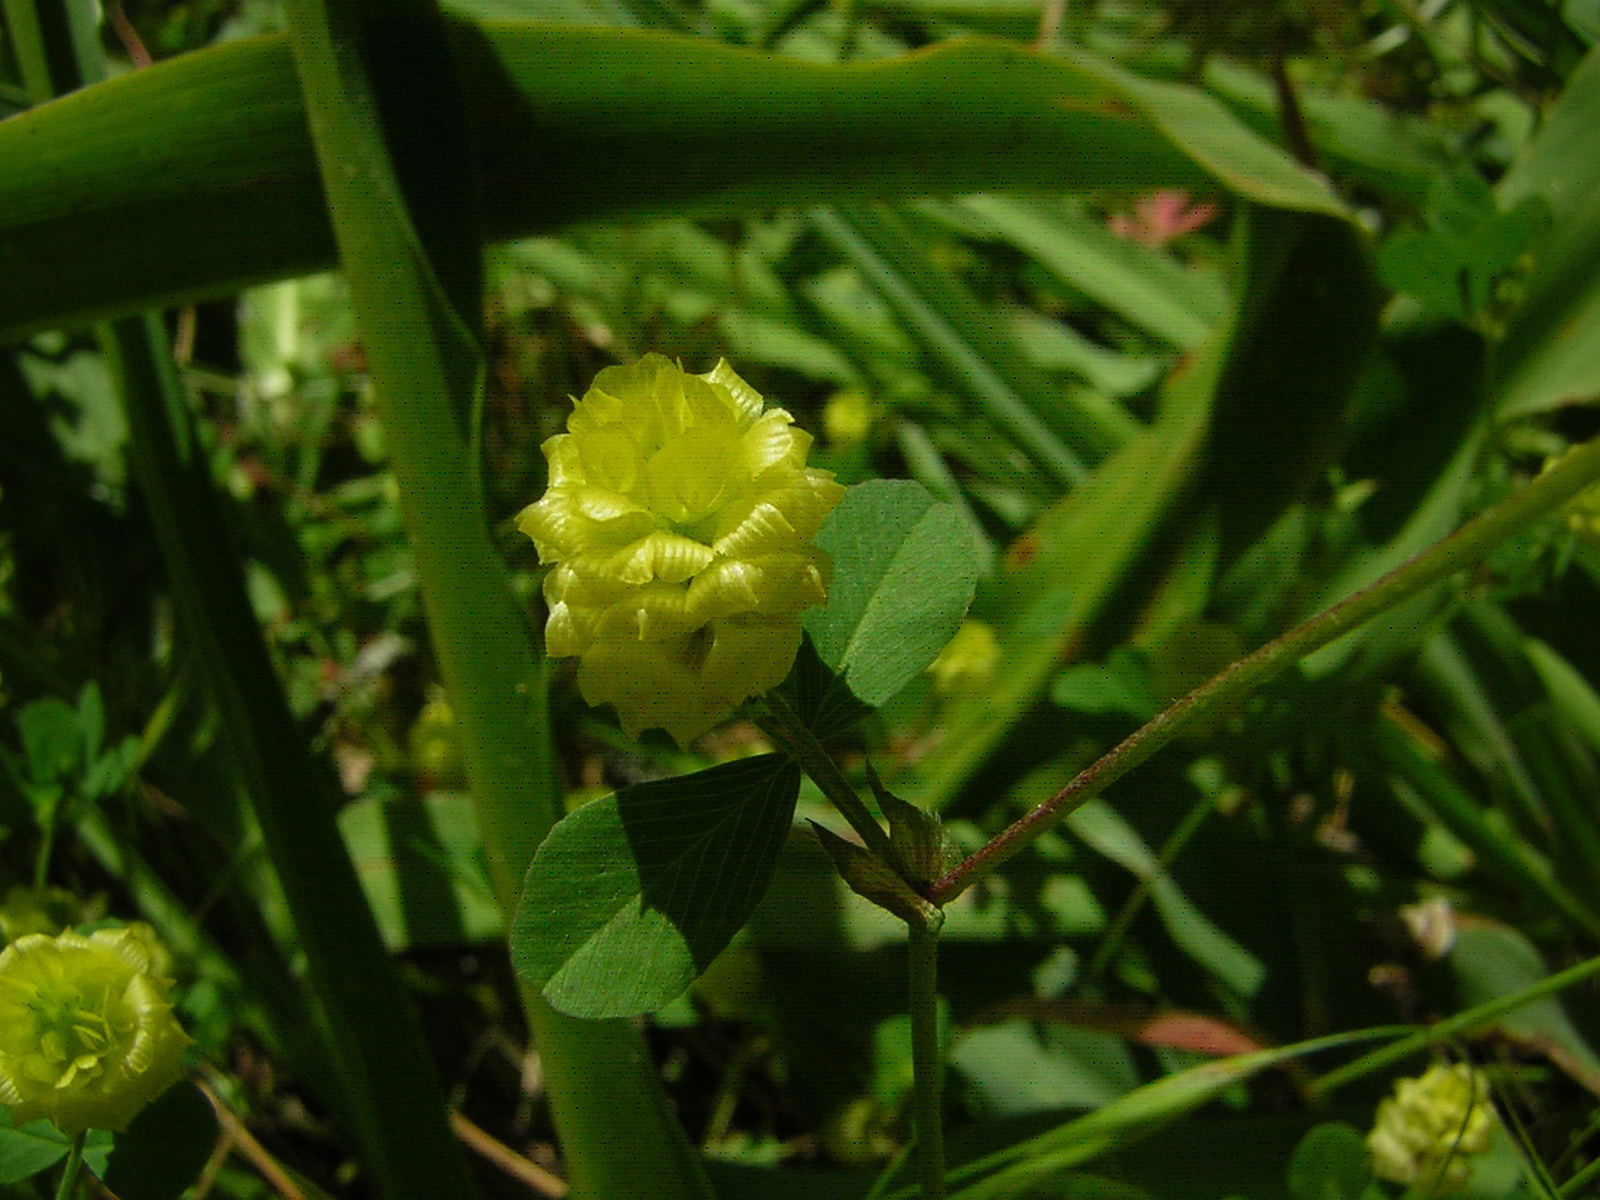 Image of <i>Trifolium campestre</i>